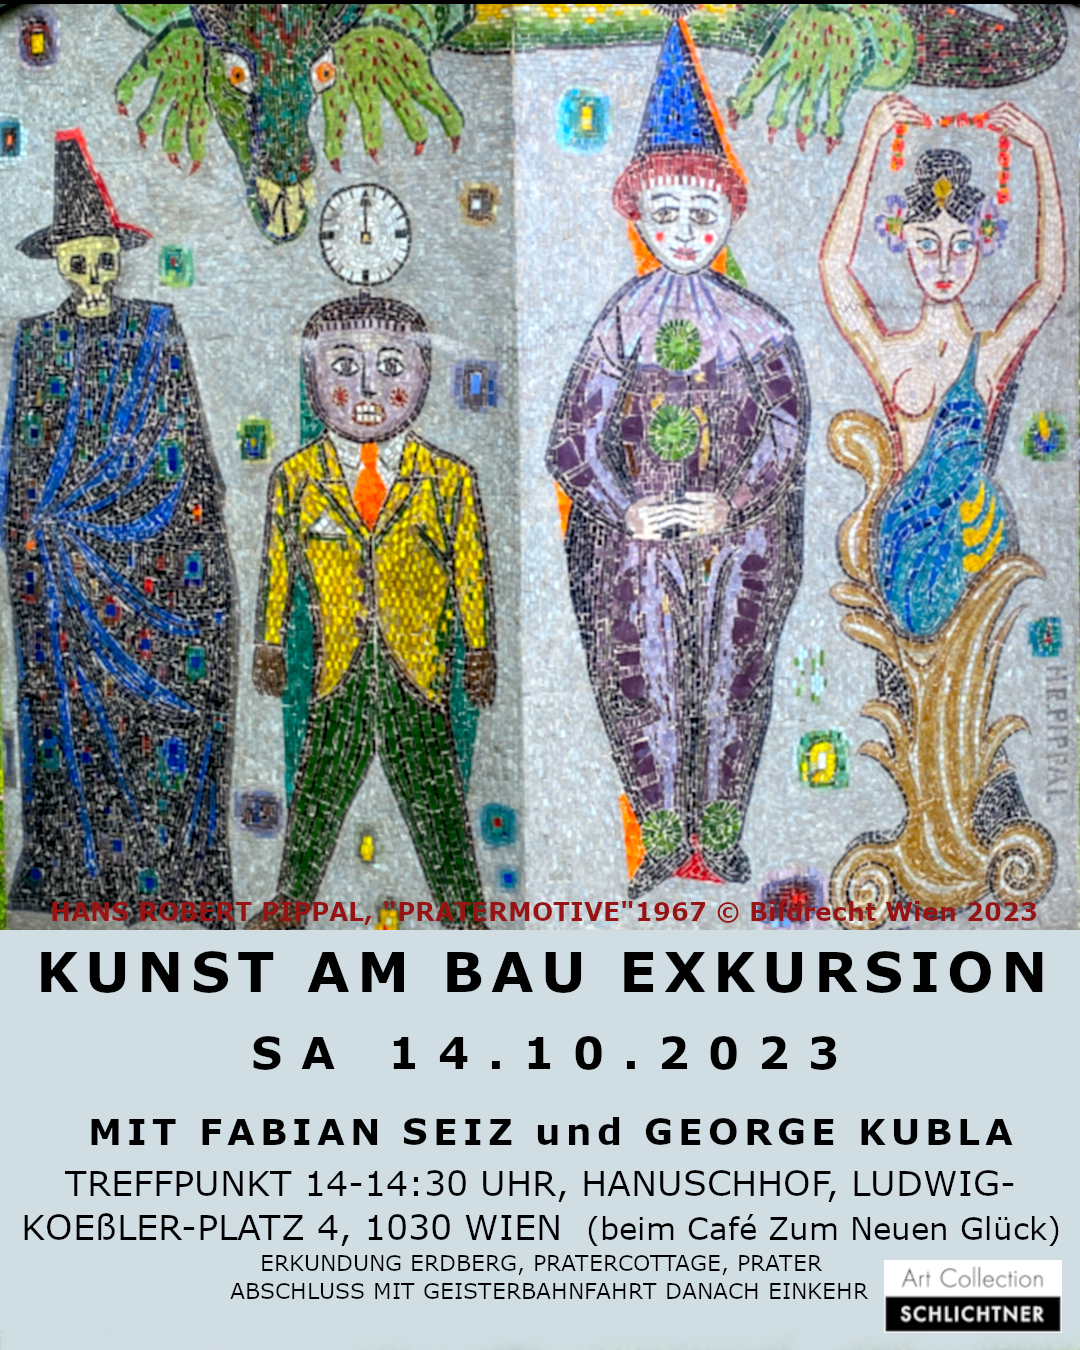 Exkursion Kunst am Bau mit Fabian Seiz und George Kubla, Erdberg, Prattercottage, Prater, Samstag 14.10.2023